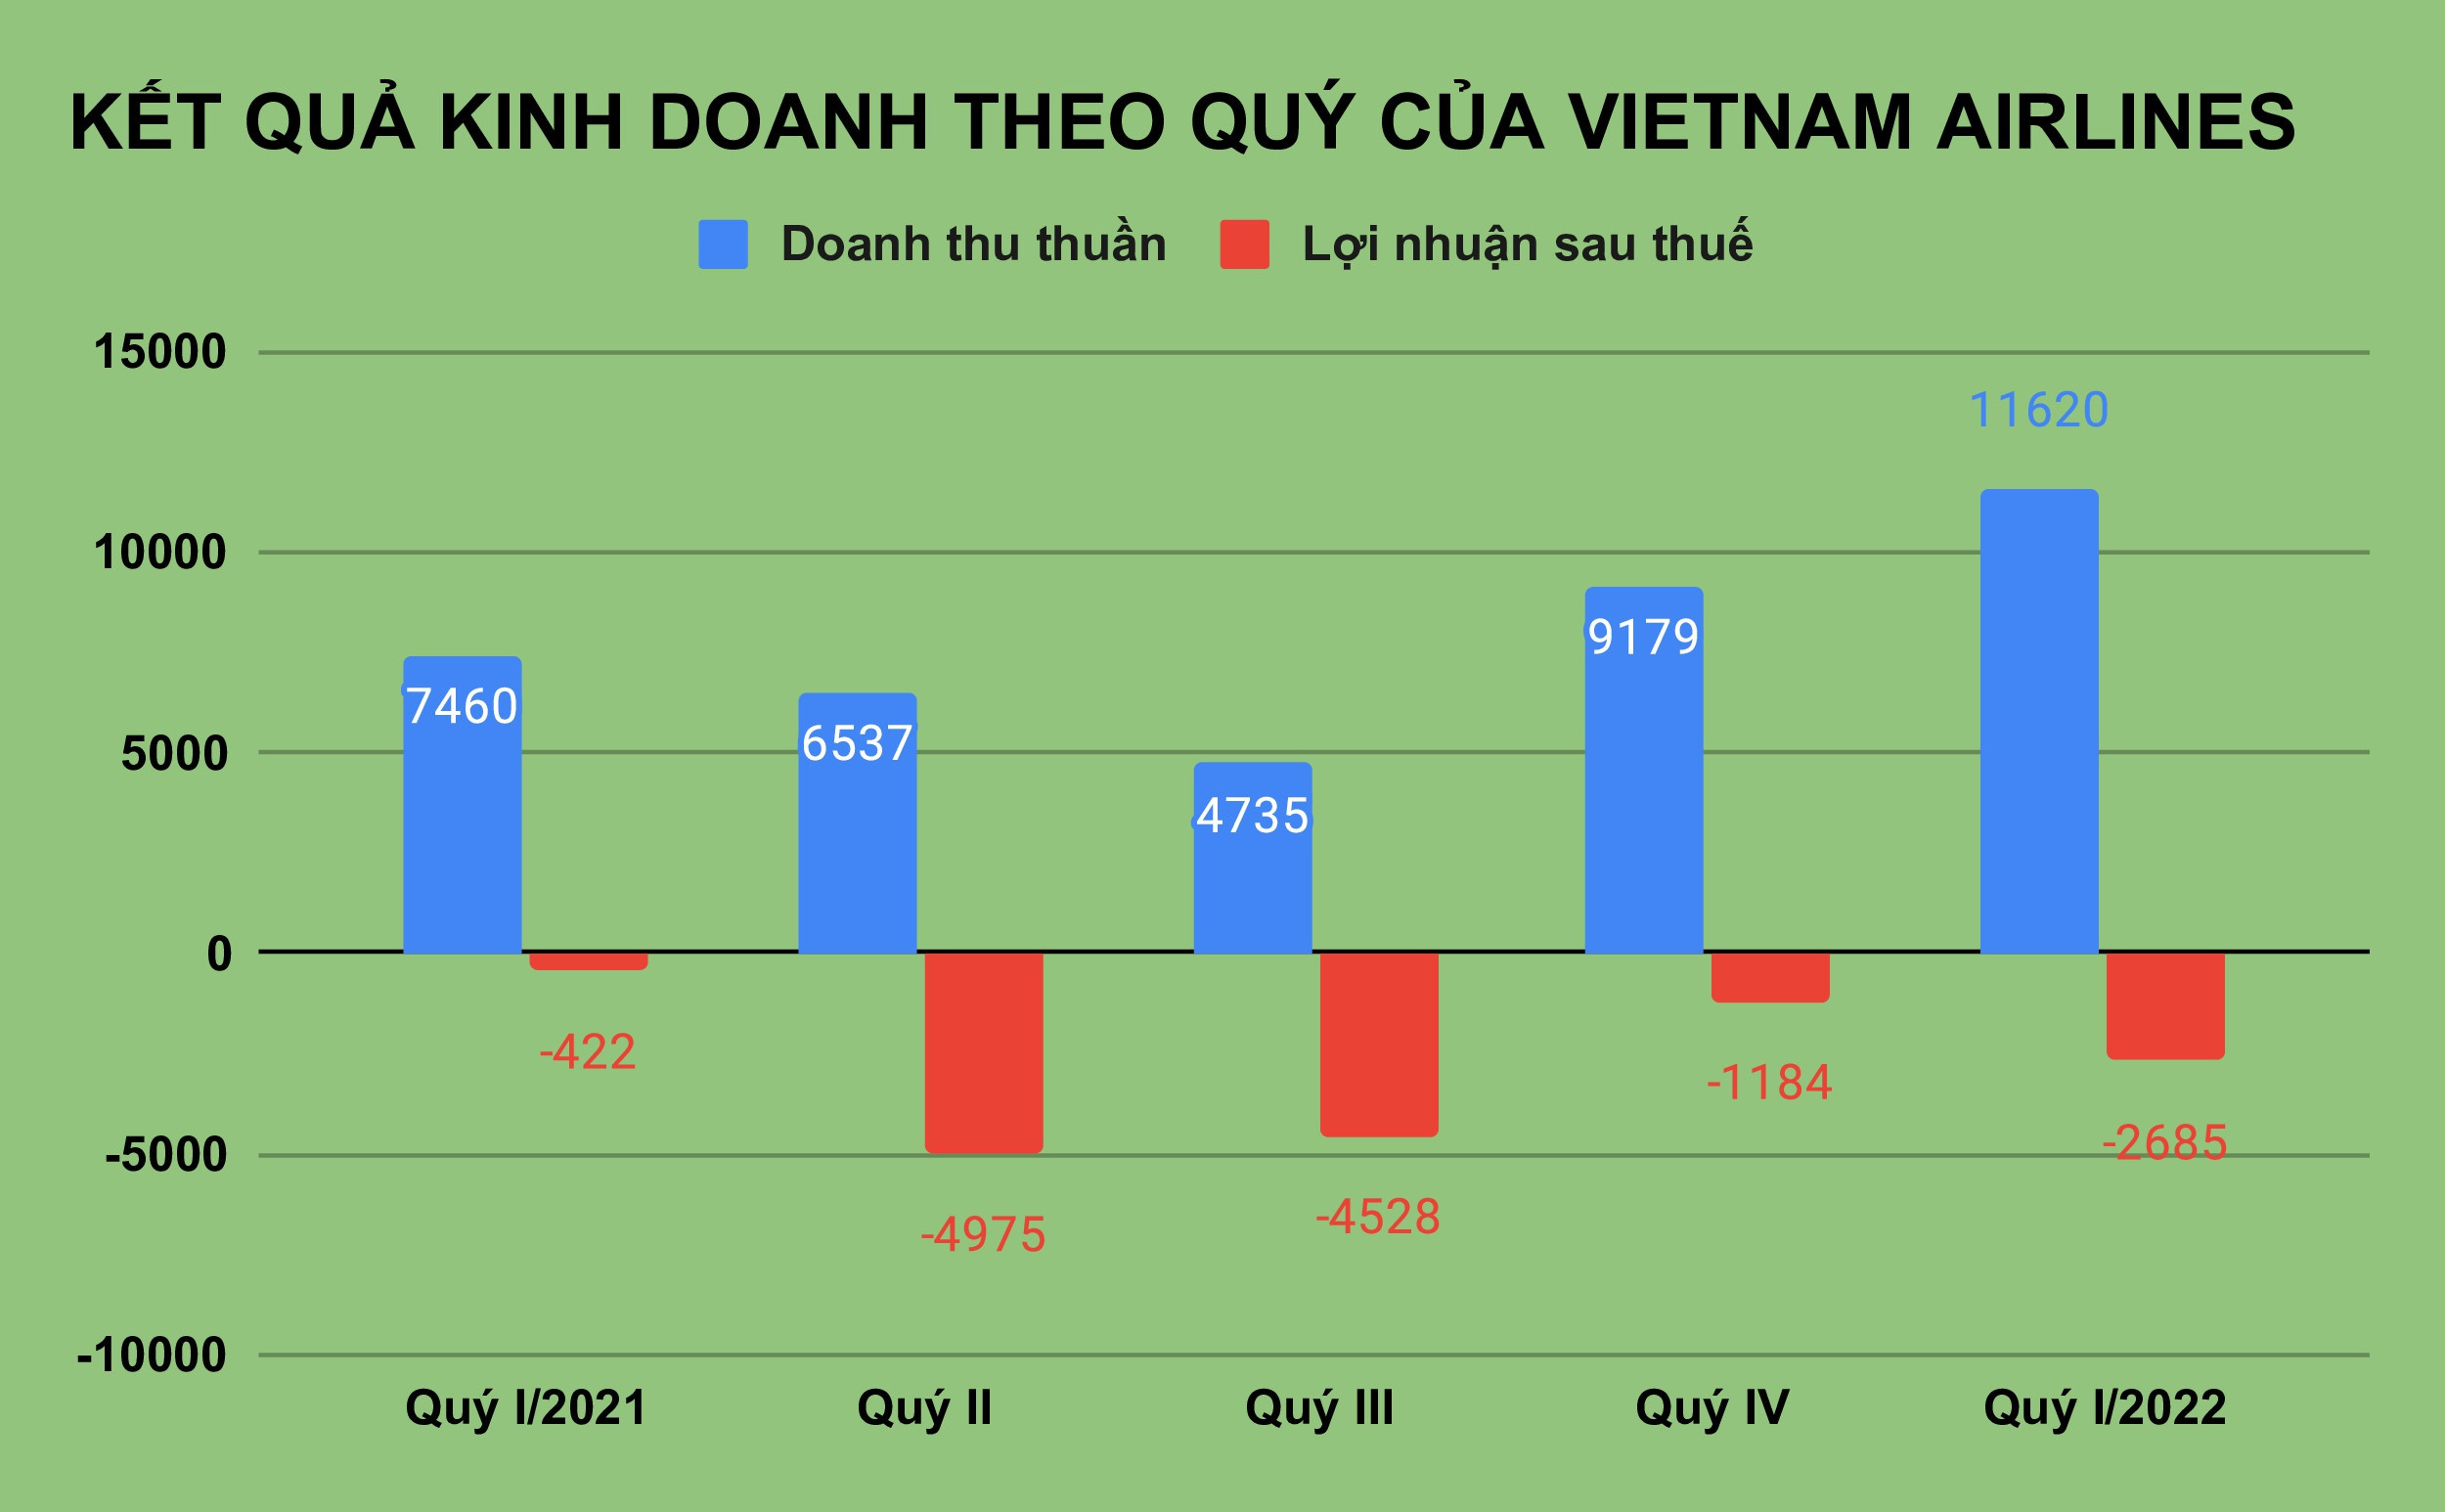 Chủ tịch Vietnam Airlines lương bao nhiêu khi hãng hàng không này lỗ lũy kế 1 tỷ USD? - Đầu tiên